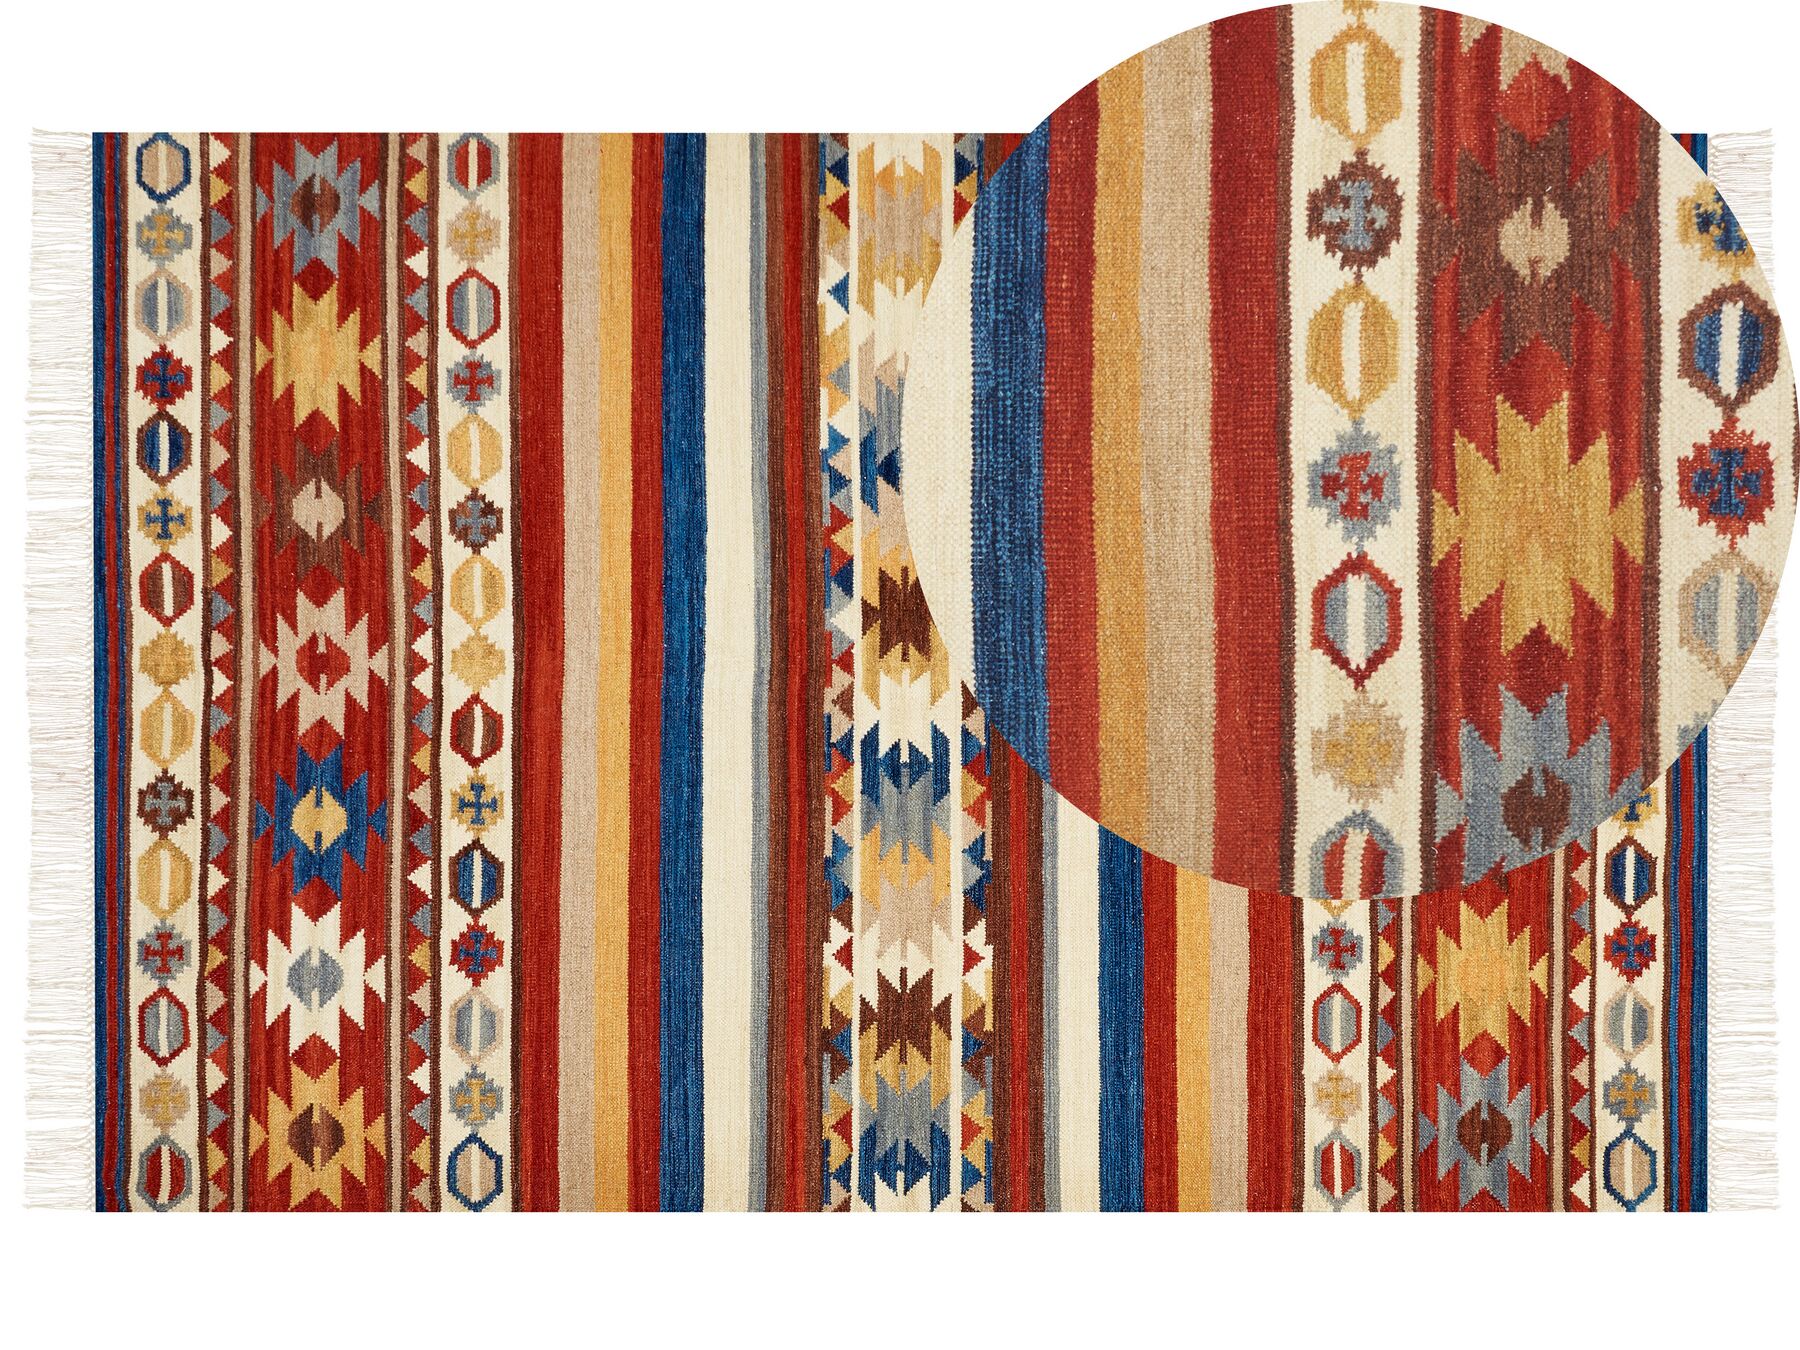 Vlněný kelimový koberec 200 x 300 cm vícebarevný JRARAT_859485